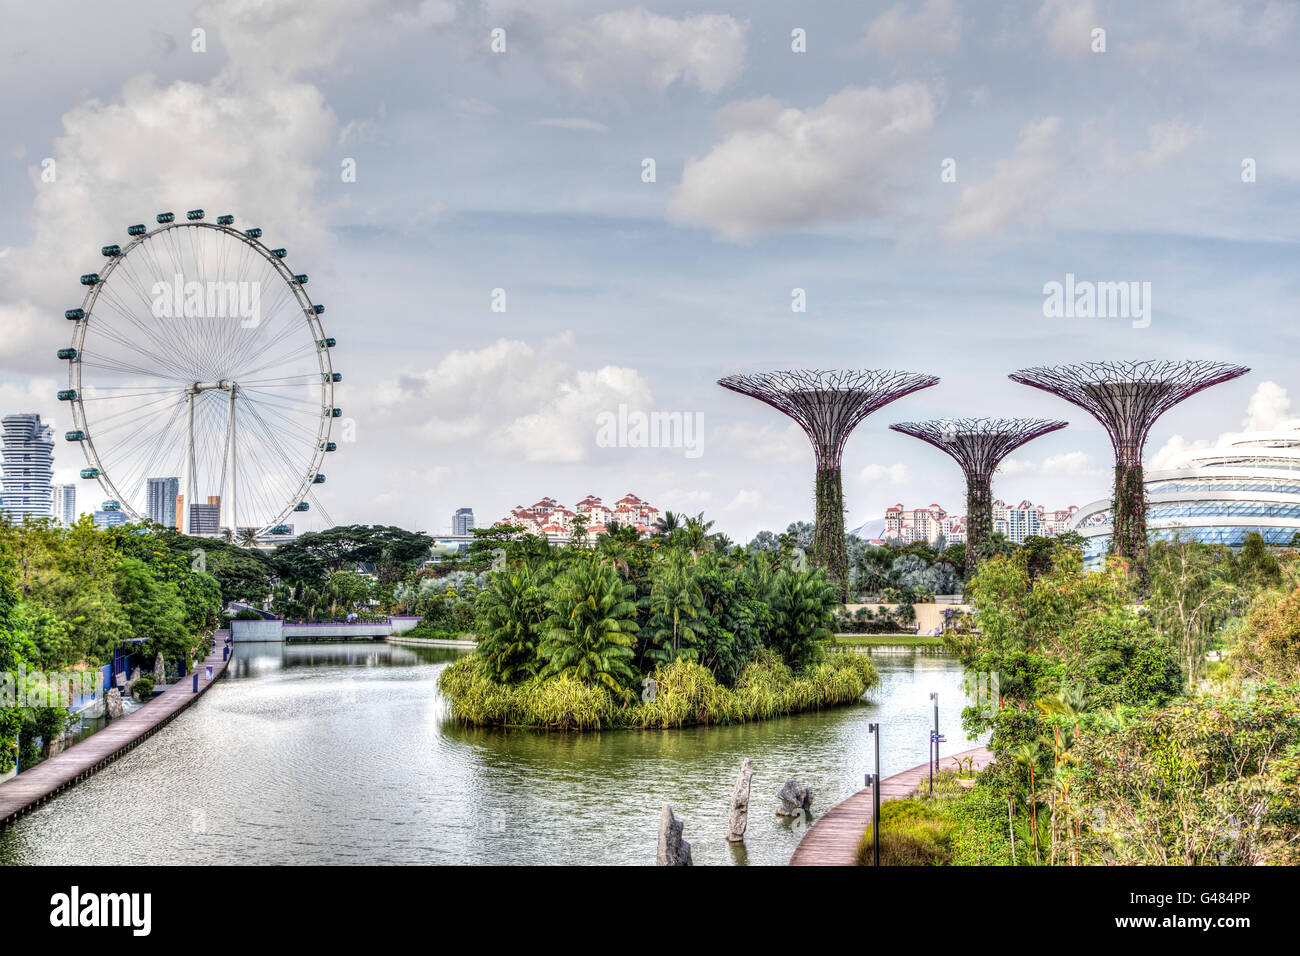 HDR-Rendering von Singapur an der Marina Bay das Riesenrad Singapore Flyer und Supertree Grove Ikone des Garten Cit sind Stockfoto